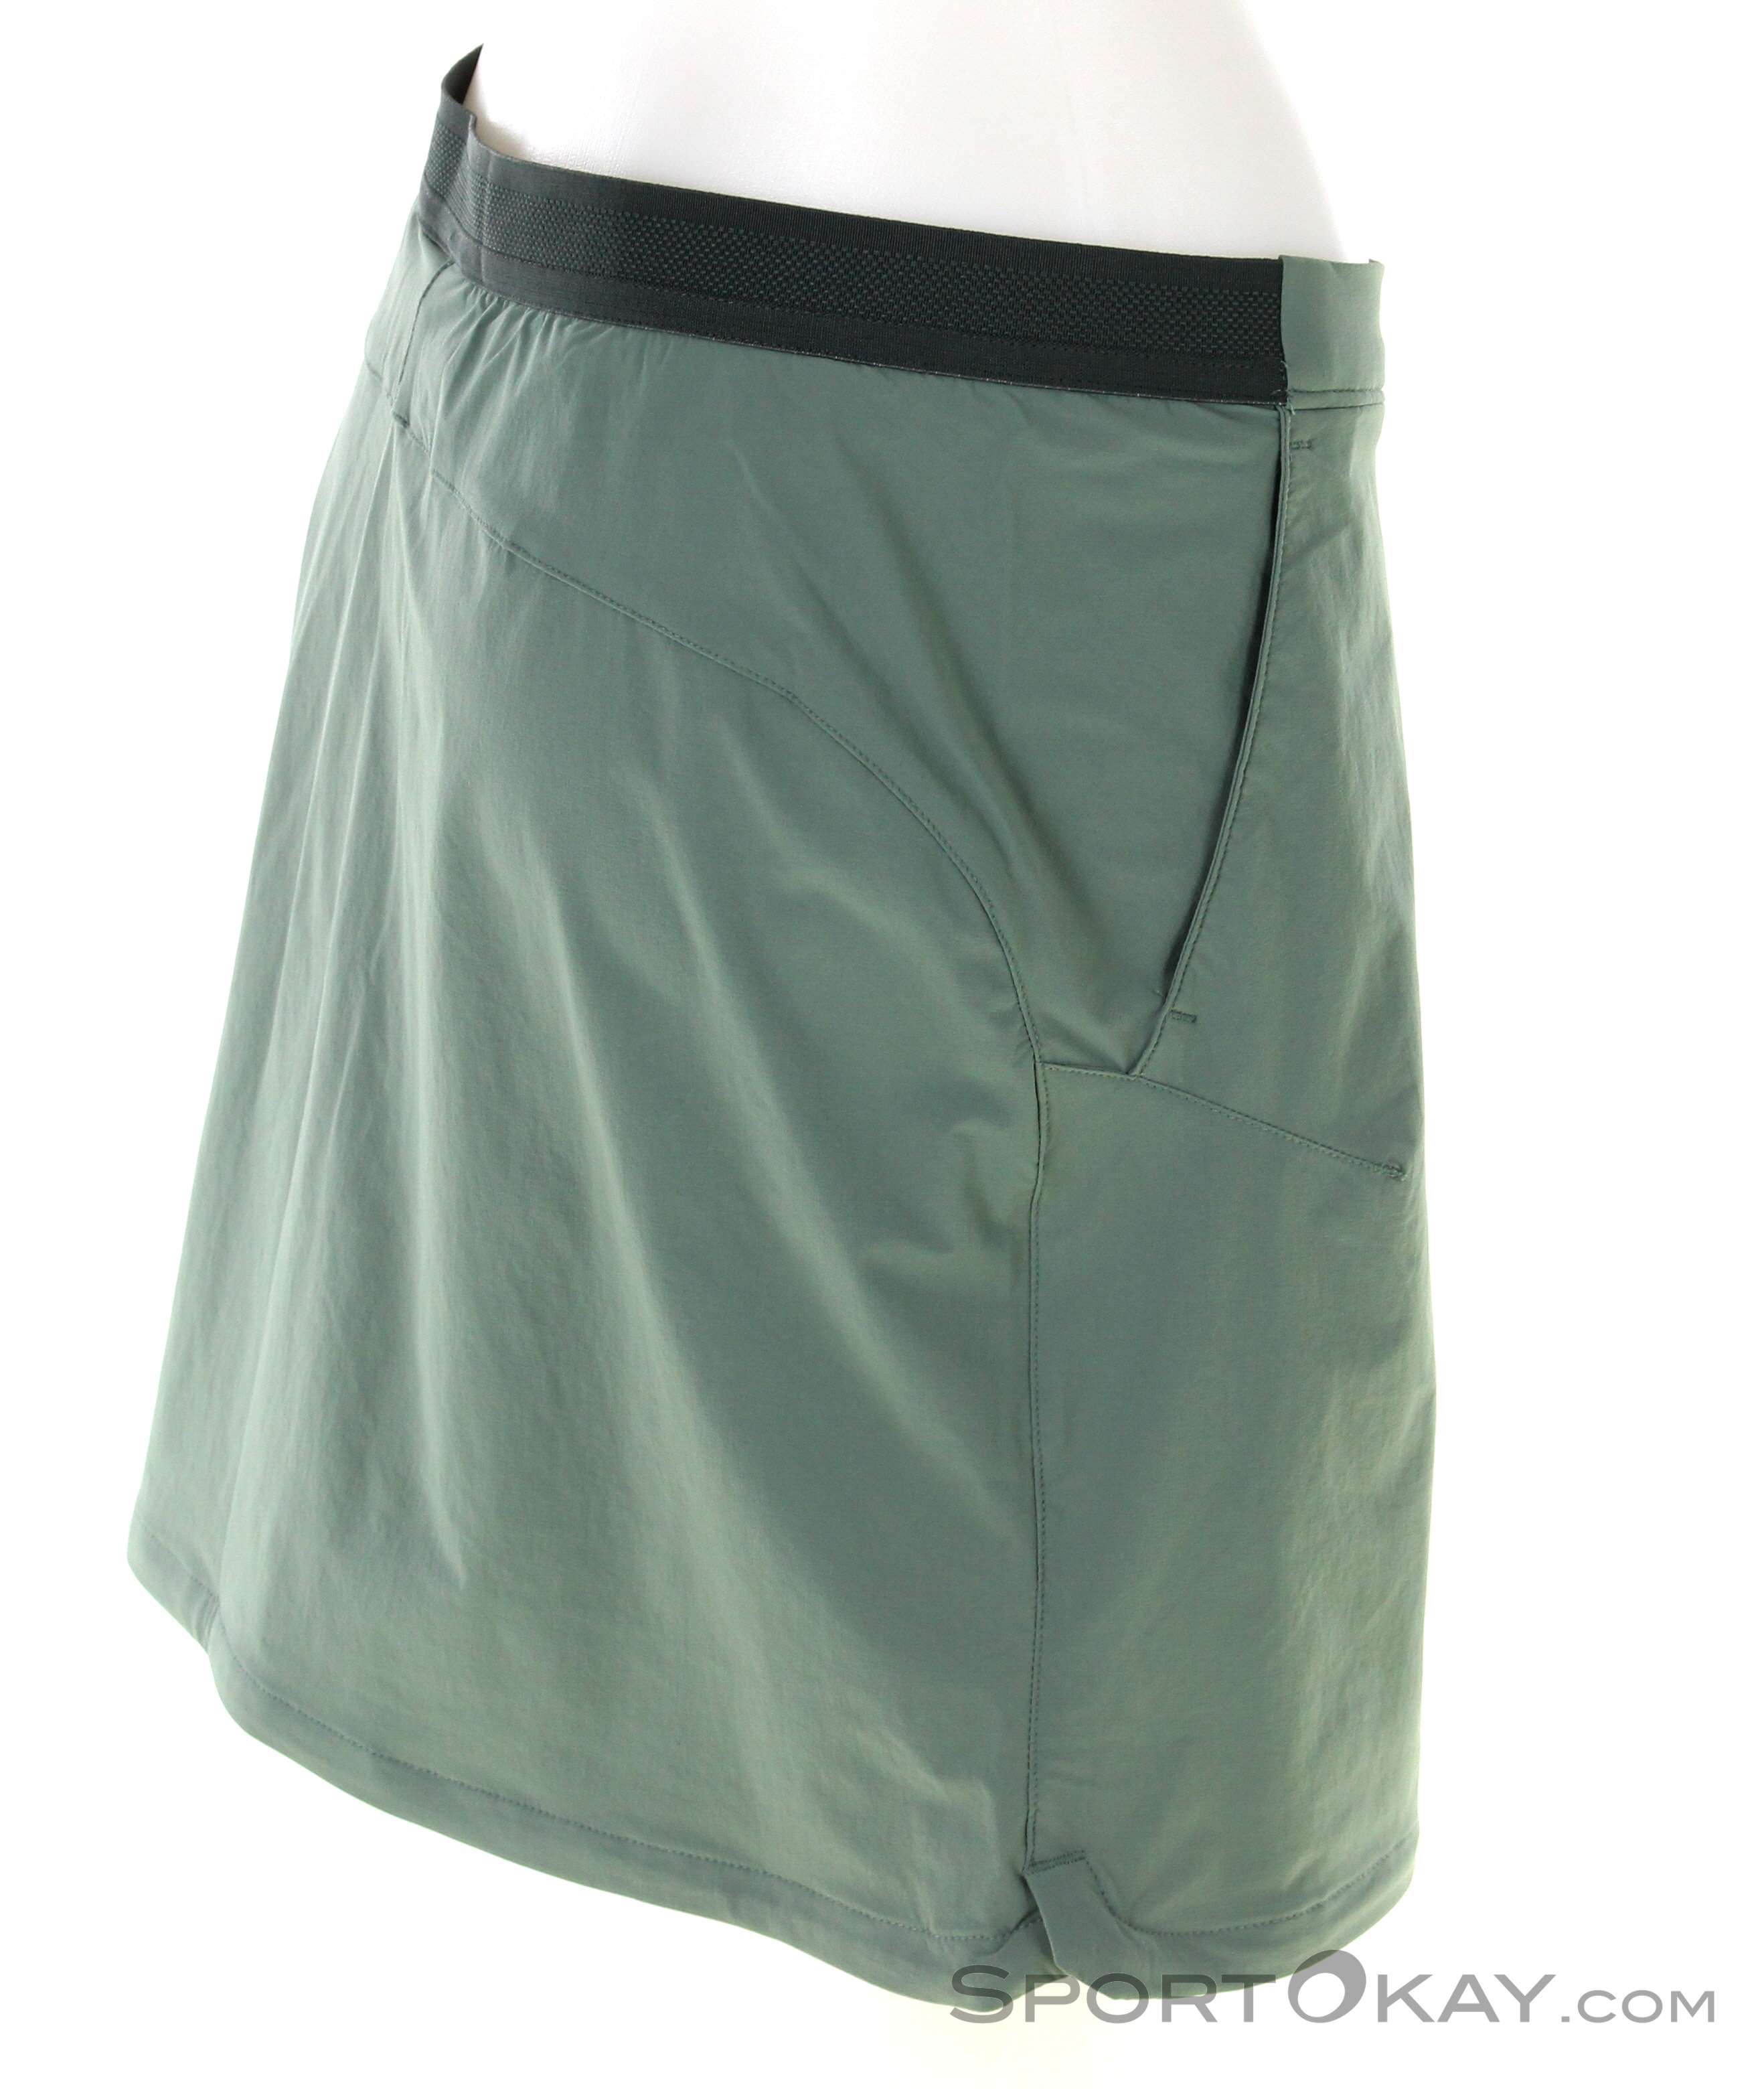 - Outdoor Outdoor Clothing Hilltop Skirt Women - - Skort Pants Jack Outdoor Wolfskin All - Trail